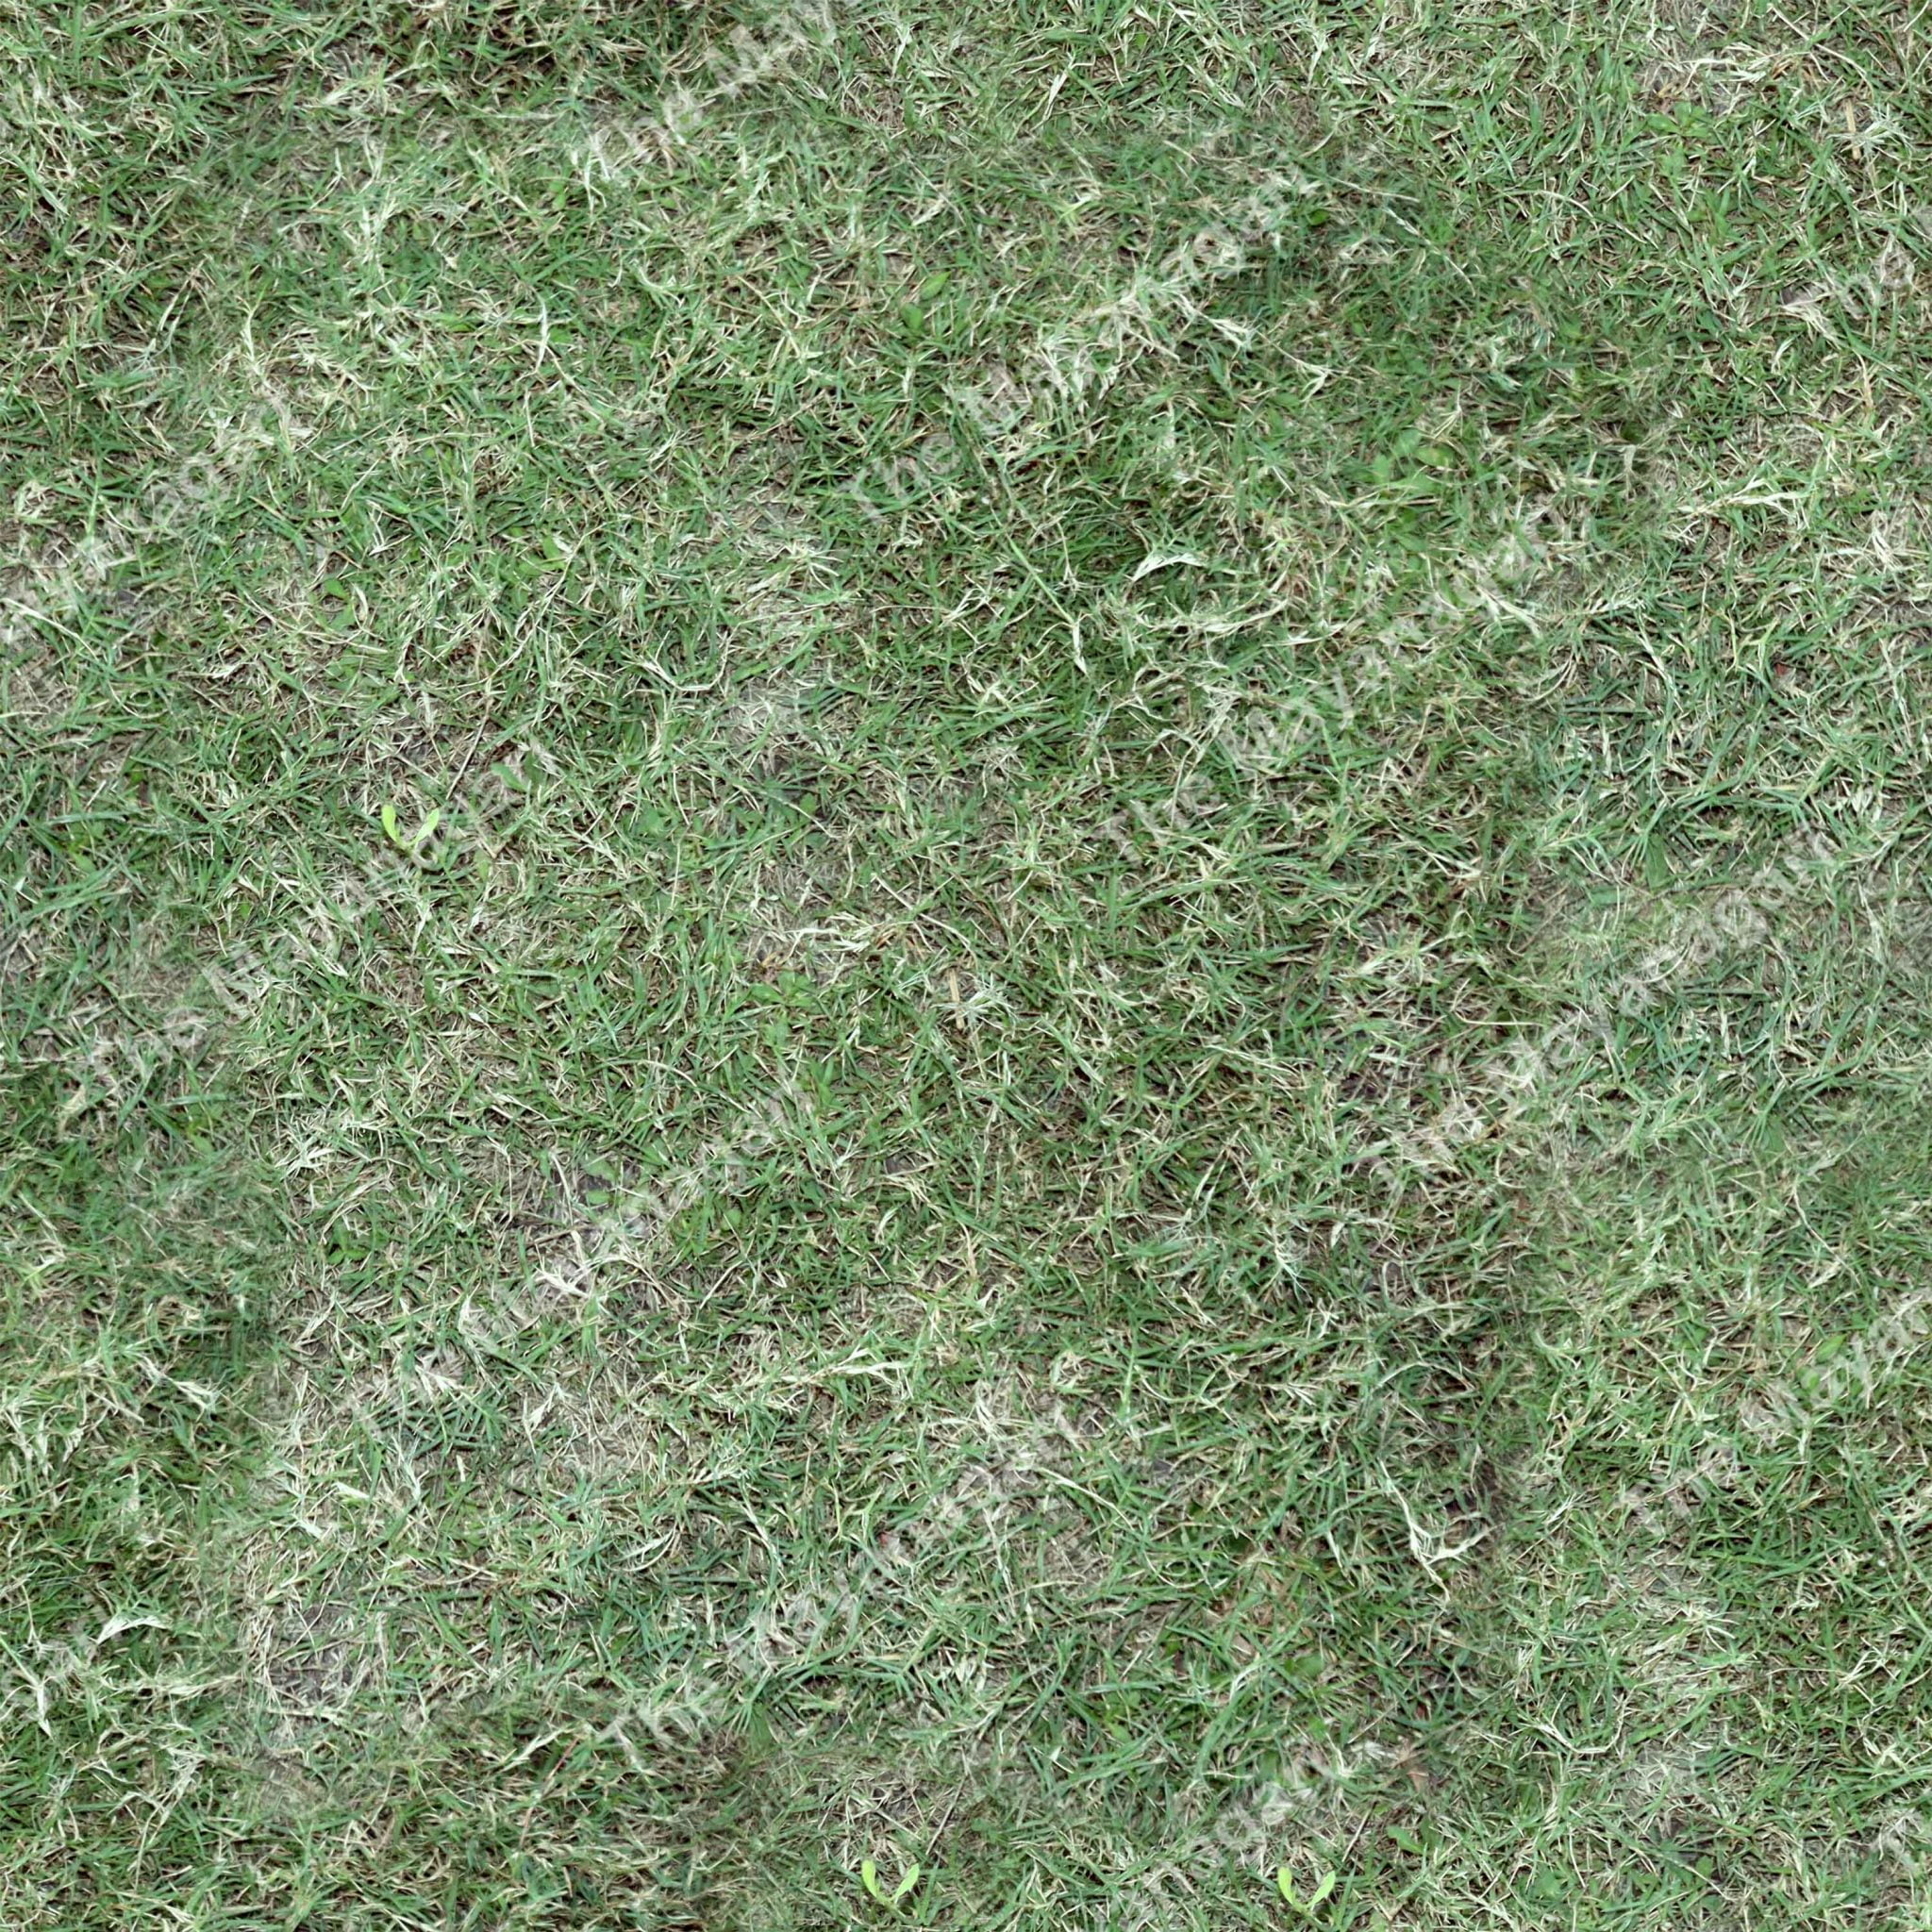 4k Grass Seamless Texture Download 